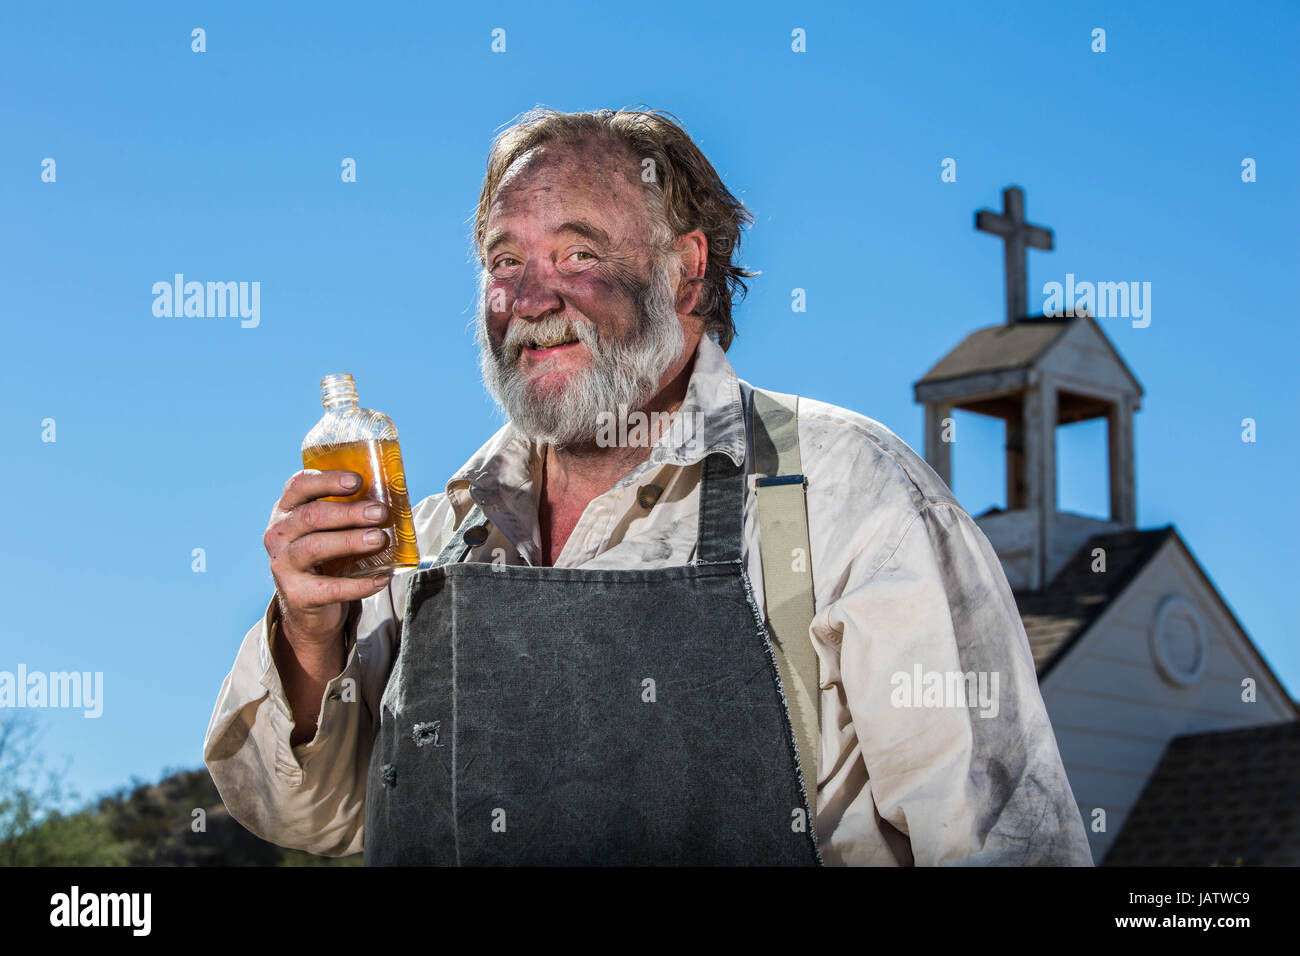 Old West Drunkard Drinks a Bottle of Alchohol Stock Photo